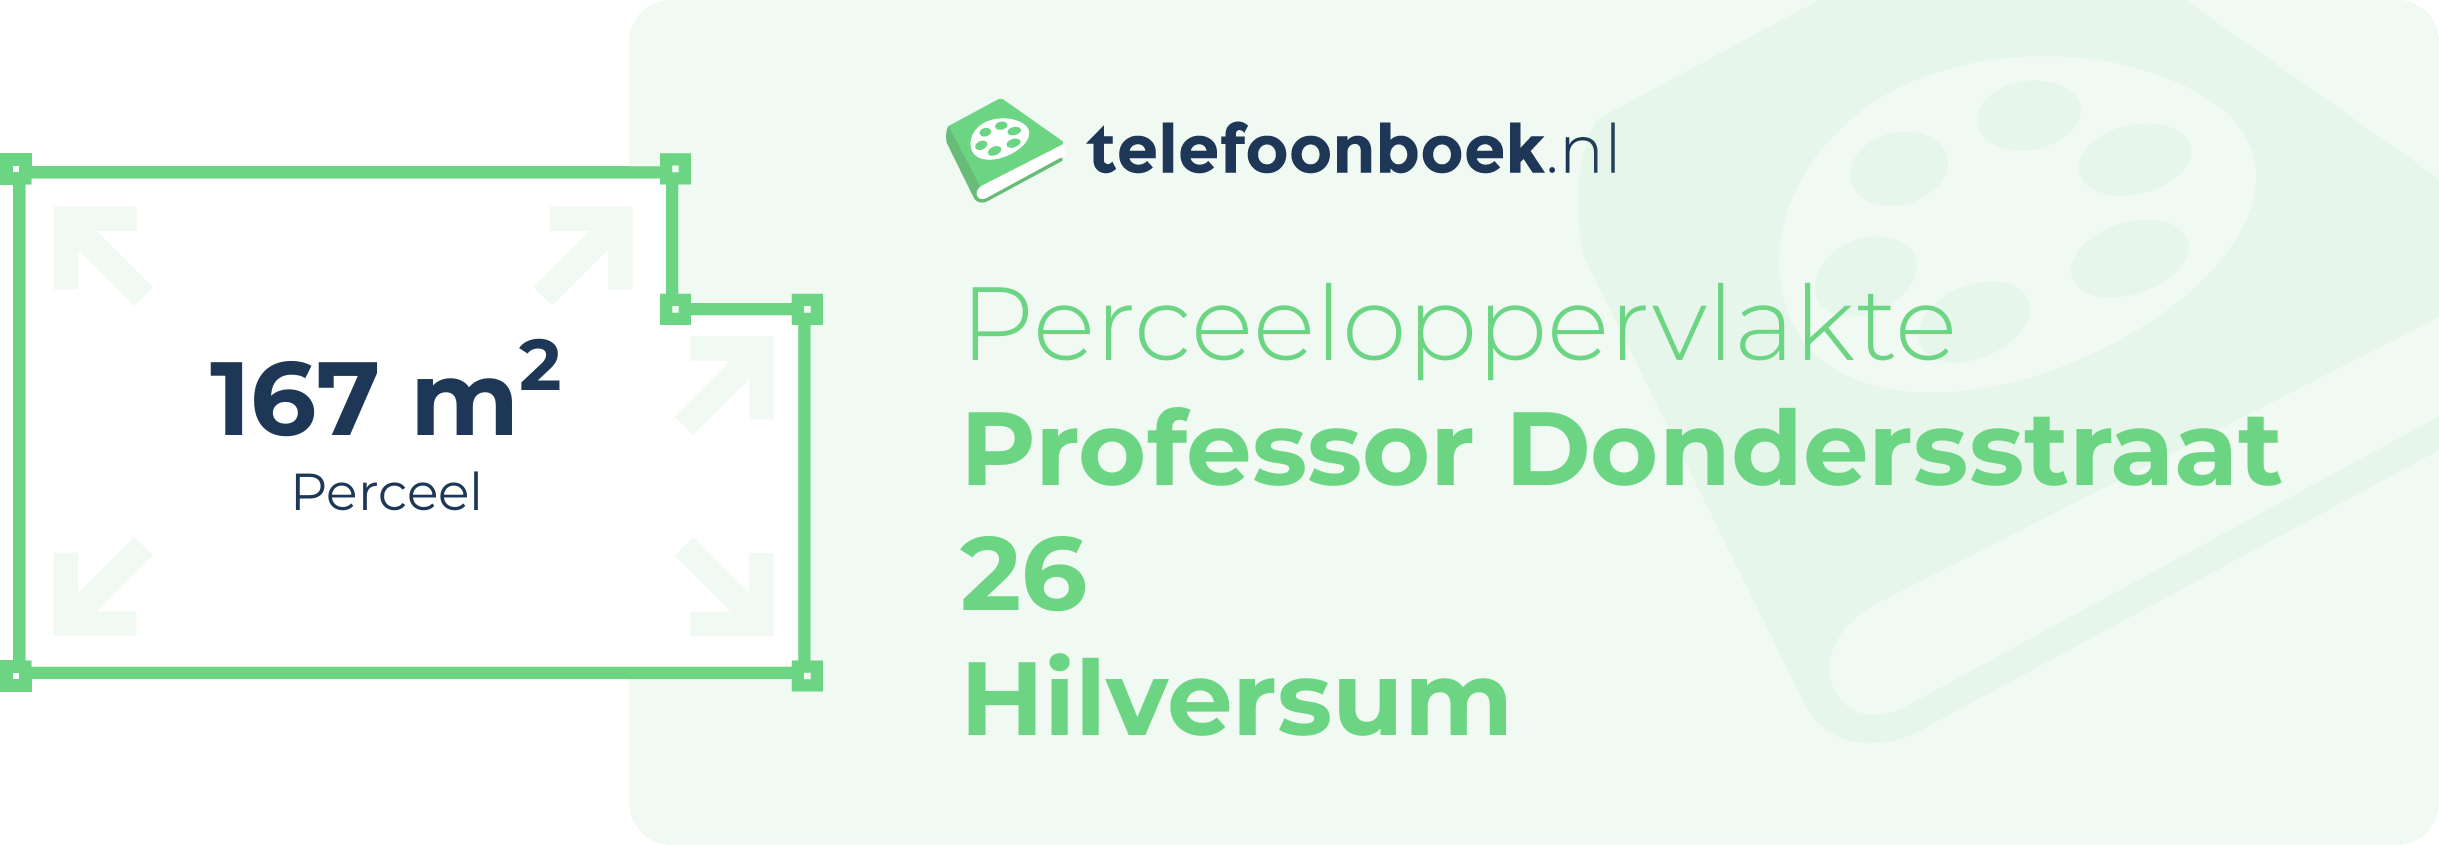 Perceeloppervlakte Professor Dondersstraat 26 Hilversum